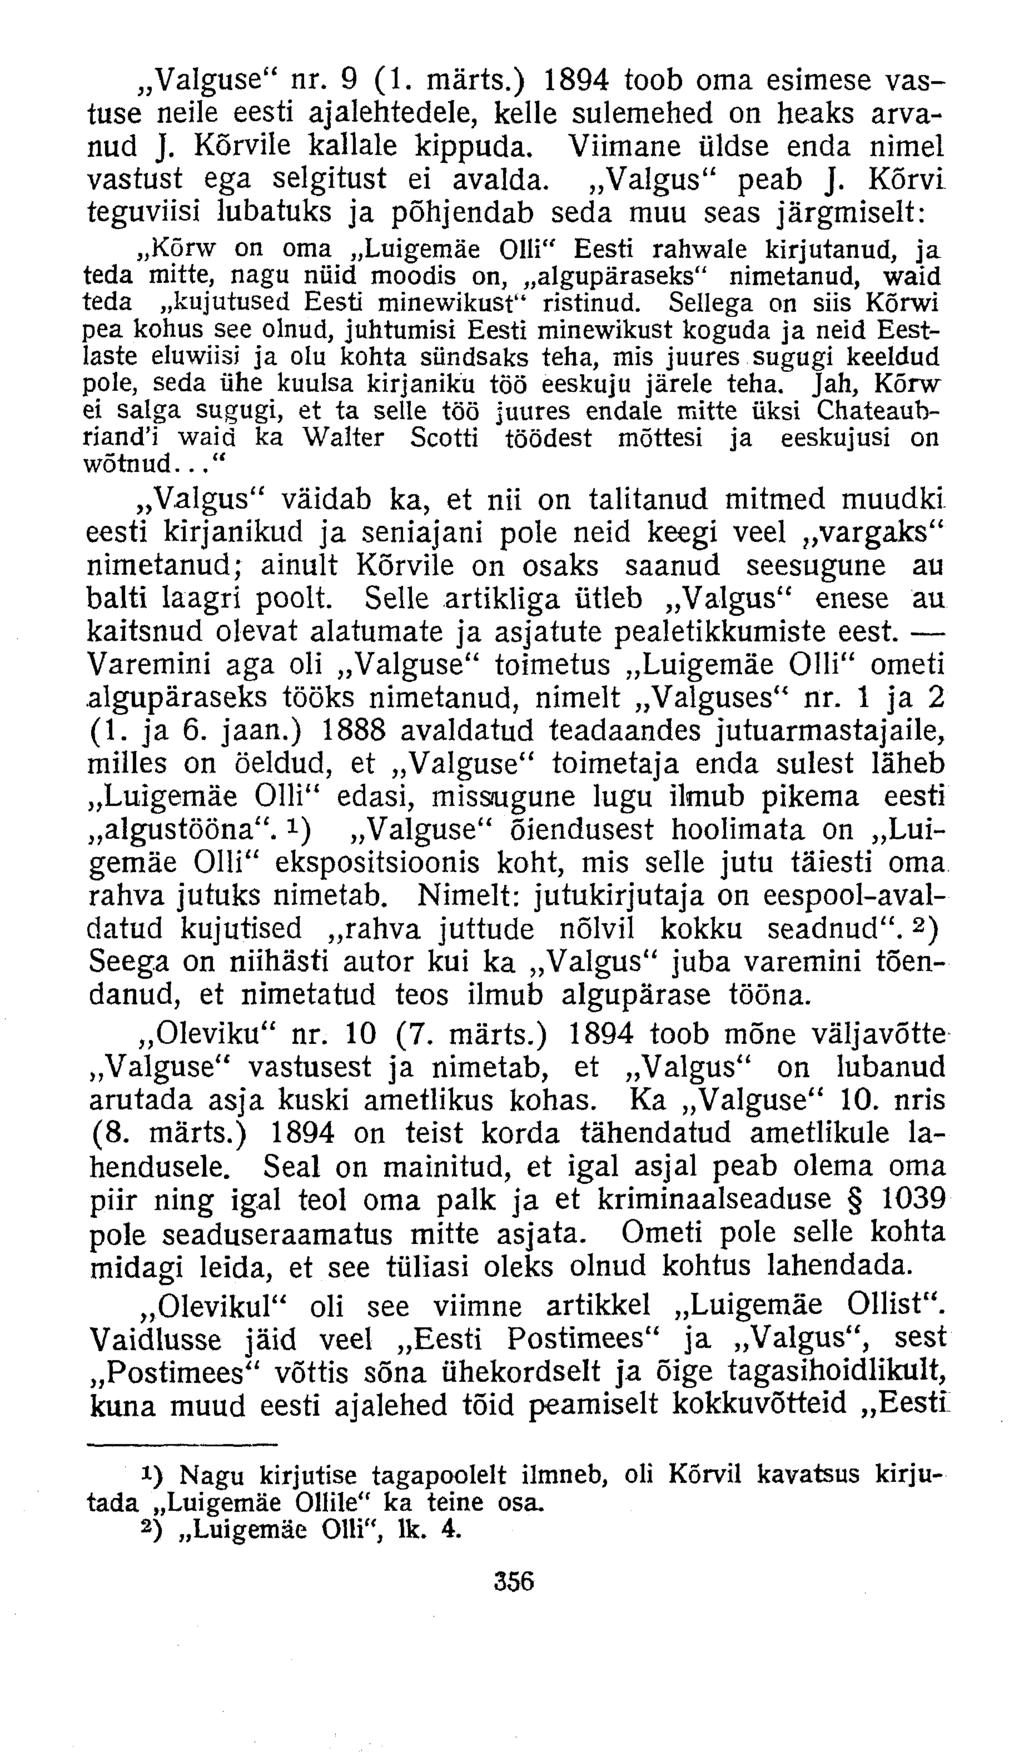 Valguse" nr. 9 (1. märts.) 1894 toob oma esimese vastuse neile eesti ajalehtedele, kelle sulemehed on heaks arvanud J. Kõrvile kallale kippuda.